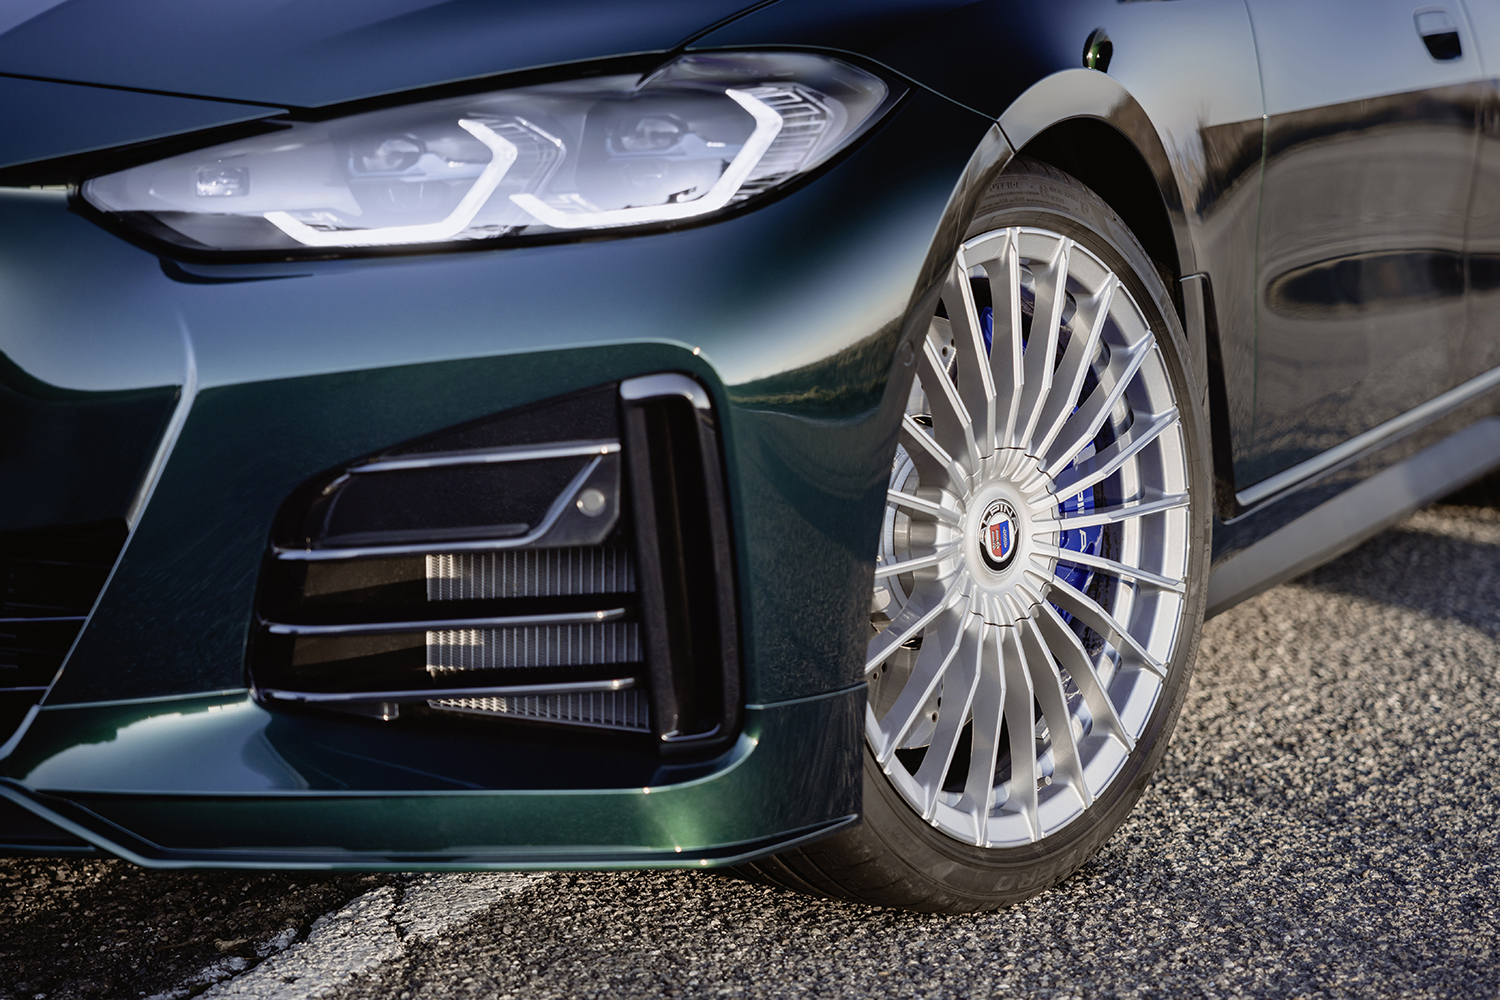 BMWアルピナ D4 S グランクーペのタイヤとホイールの写真 〜 画像22